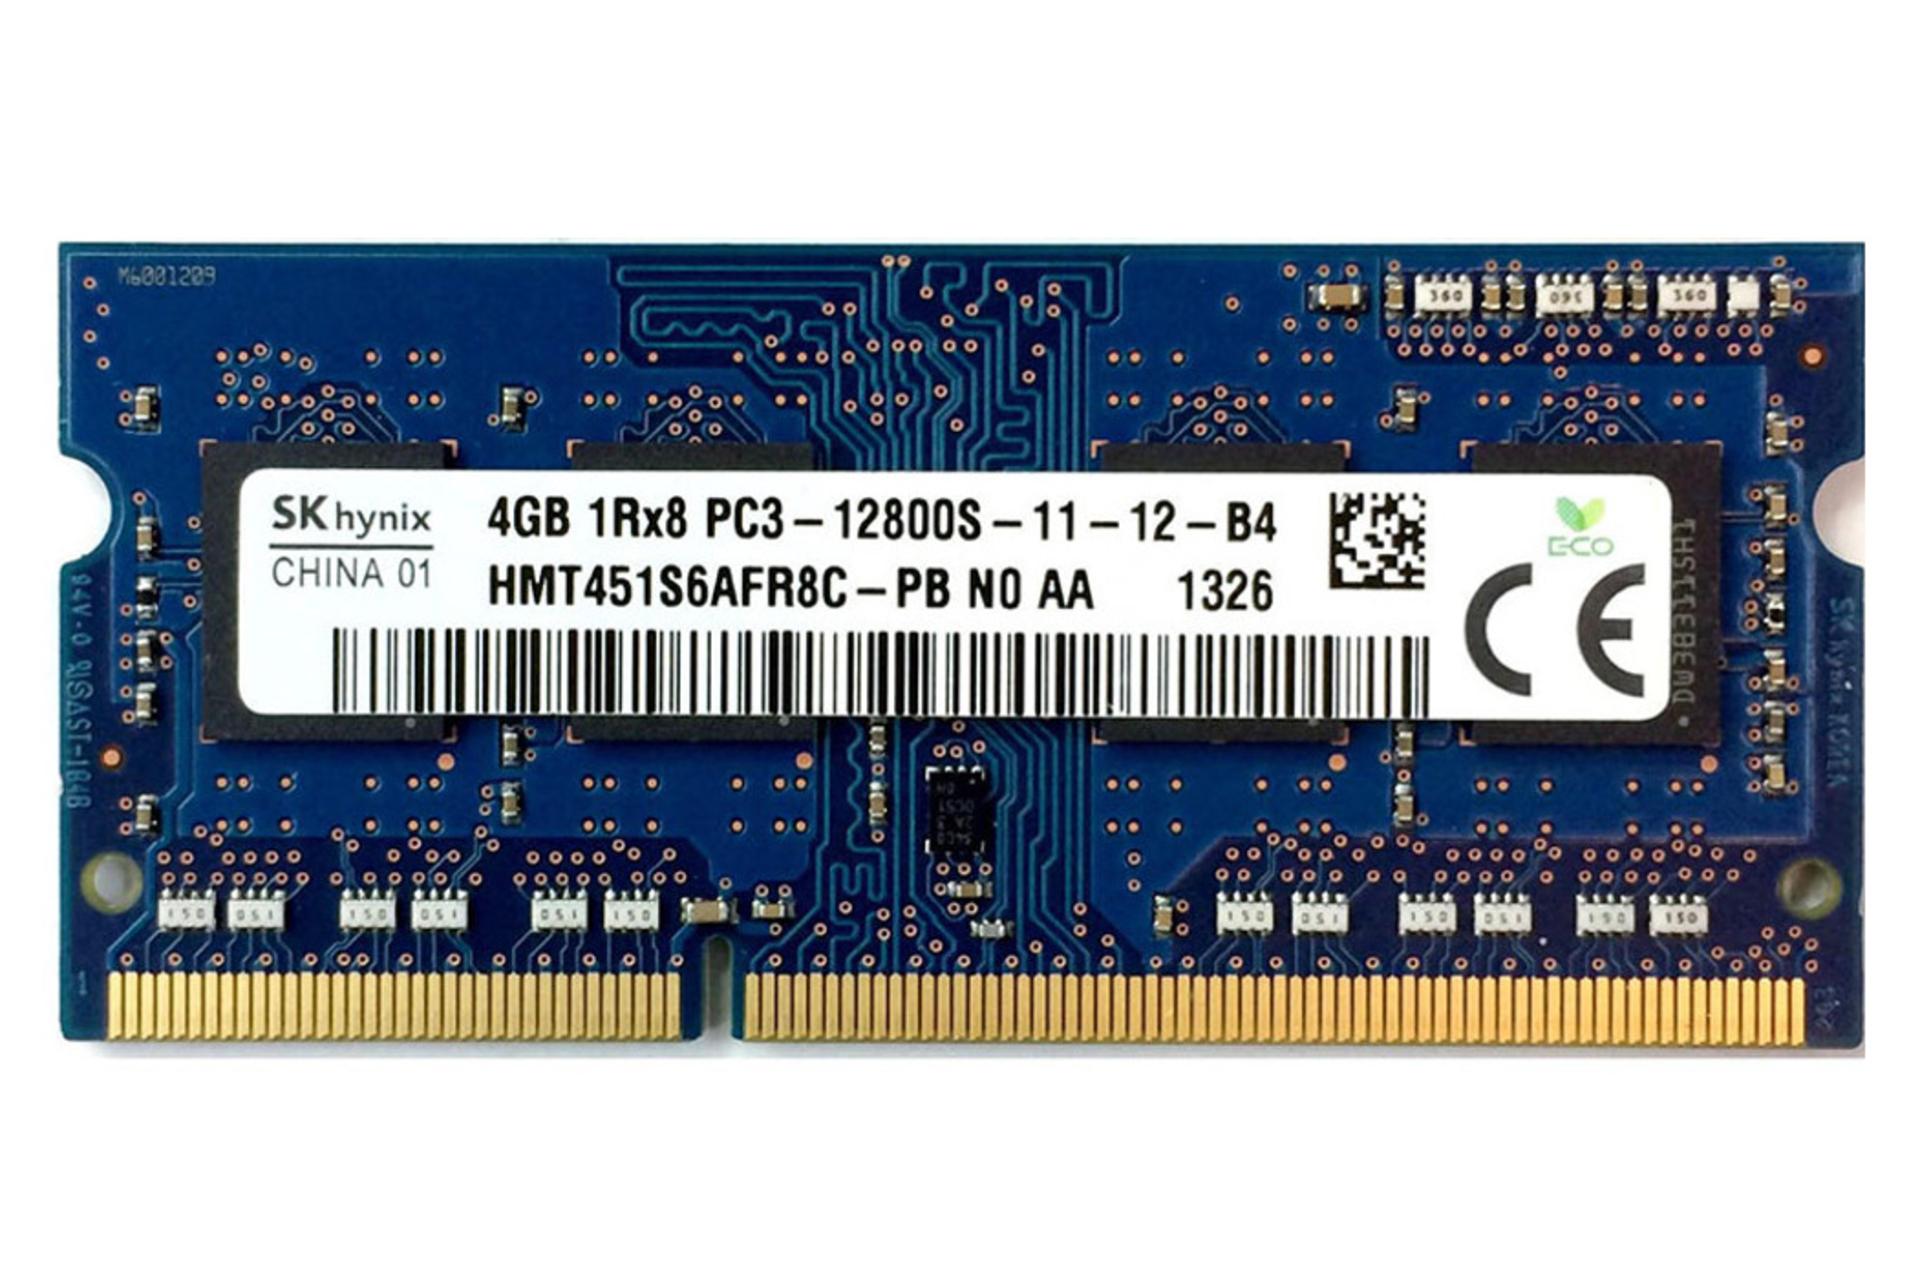 رم اس کی هاینیکس SK Hynix HMT451S6AFR8C-PB ظرفیت 4 گیگابایت از نوع DDR3-1600